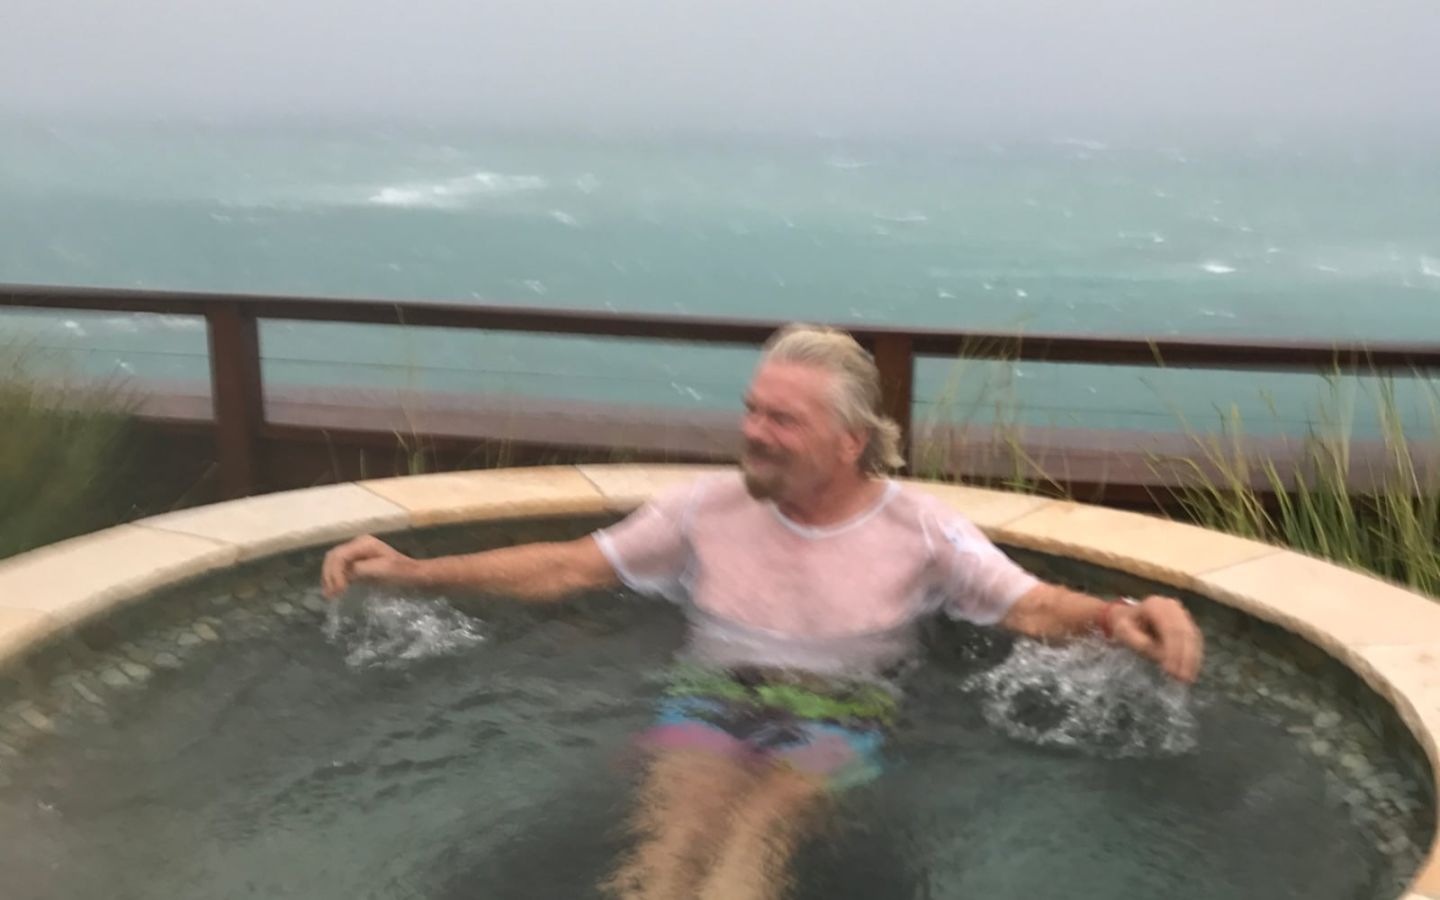 Richard Branson sitting in a hot tub on Necker island